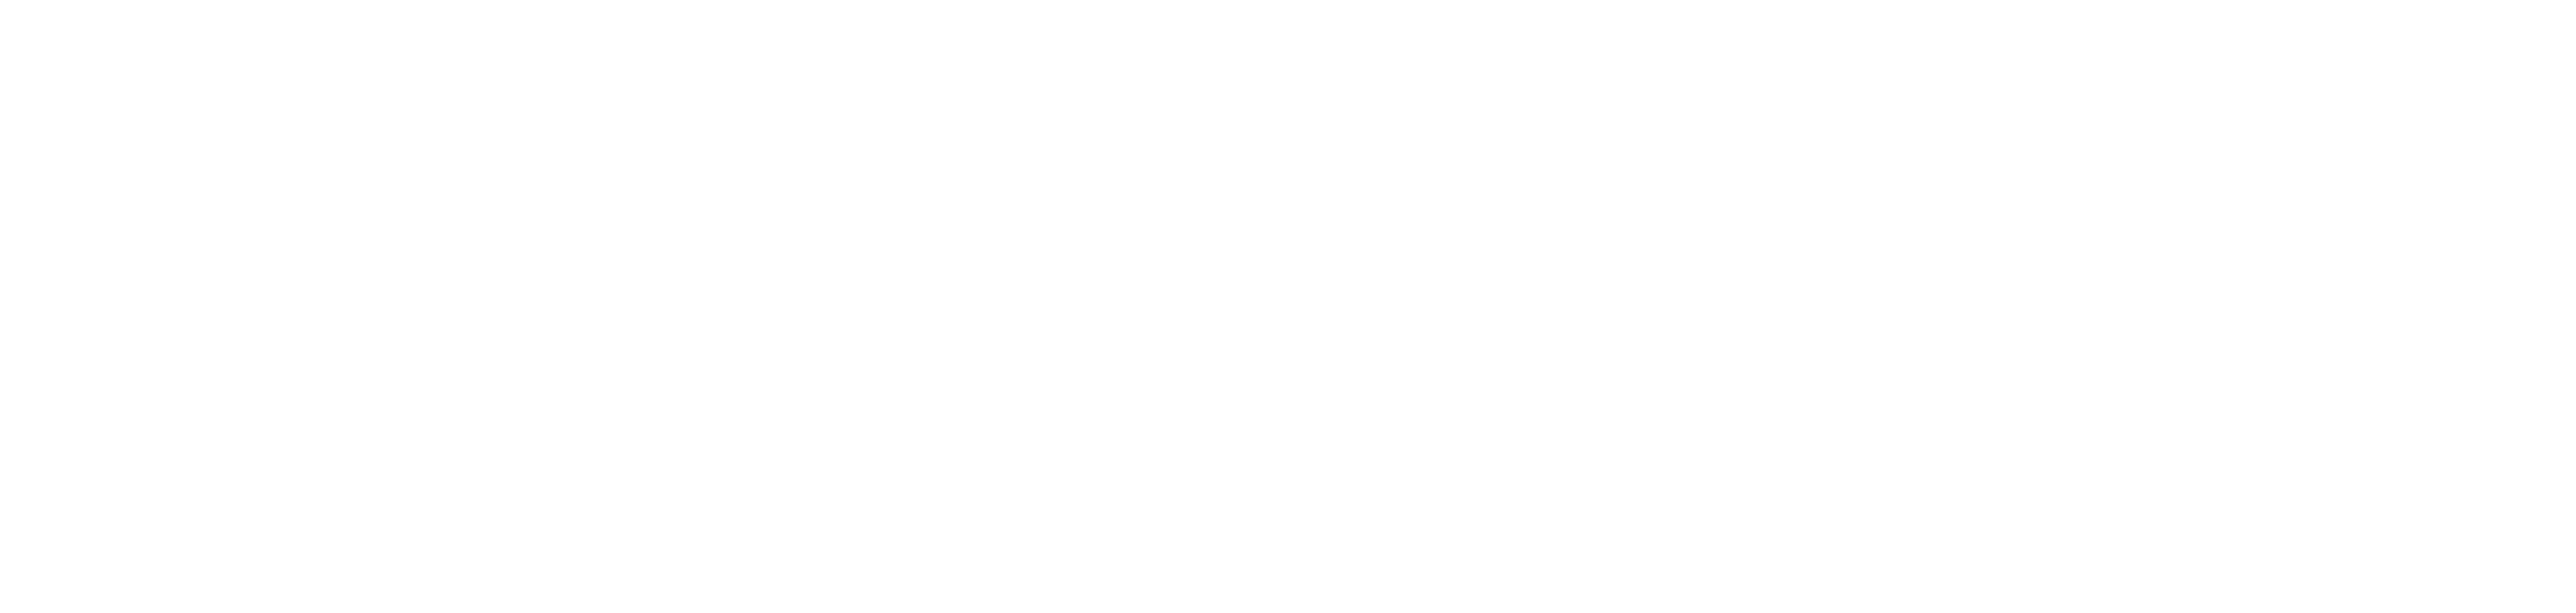 Sound Wave Logo Design PNG